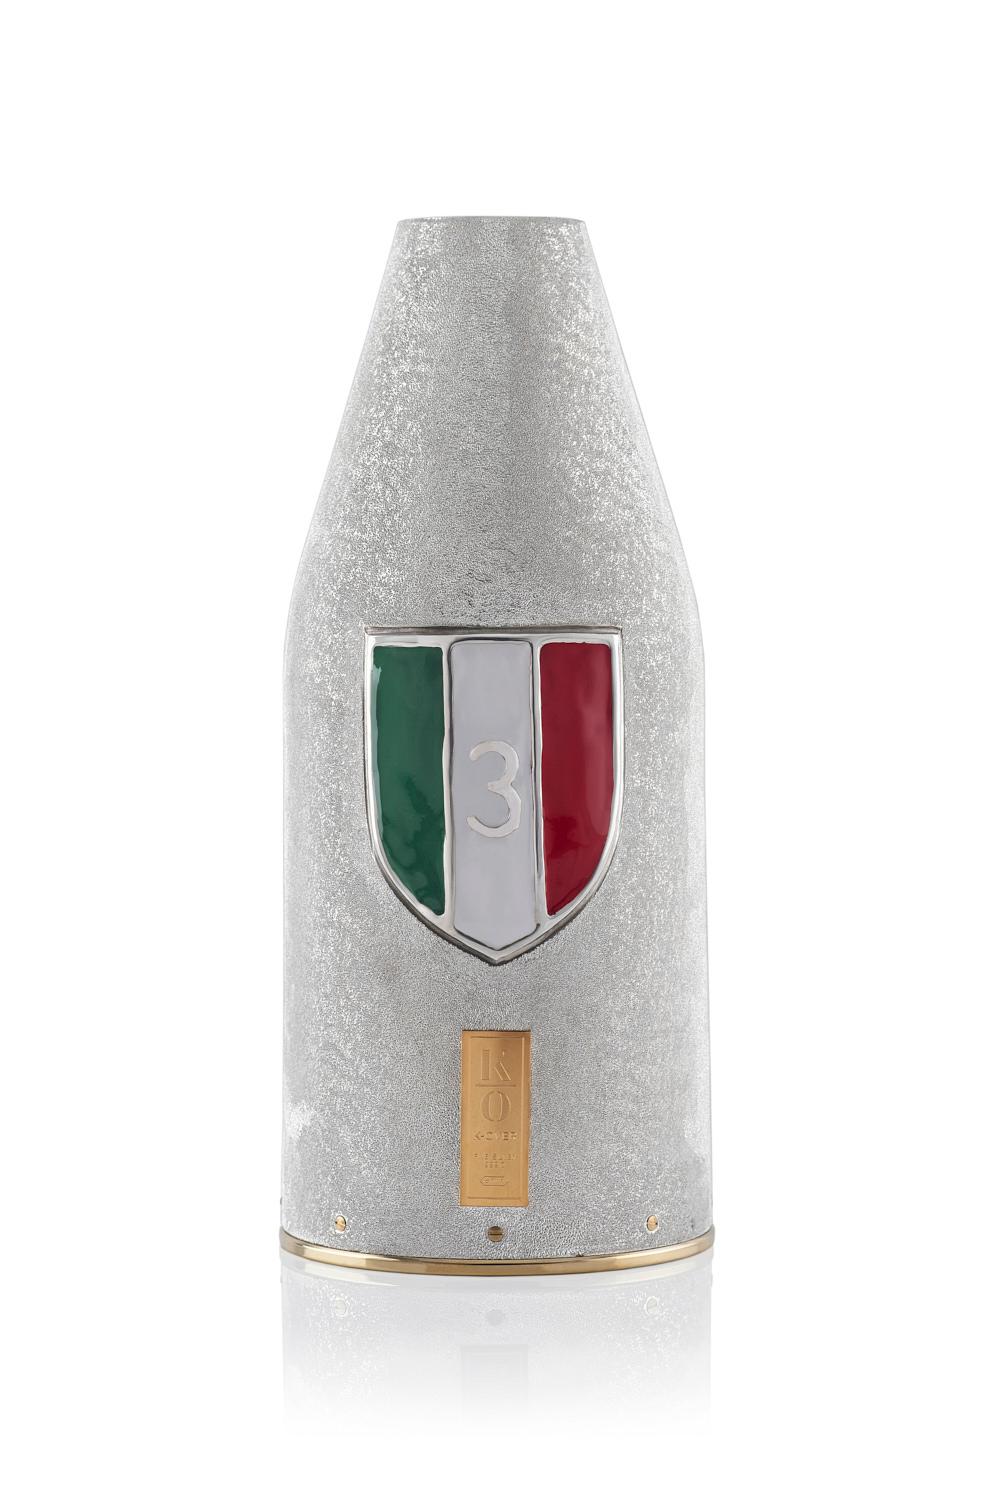 NAPLES CHAMPIONNE D'ITALIE :
Nos K-OVER sont des alternatives au seau à champagne et à la glacette plus courante.  Le métal précieux qui maintient la bouteille est recouvert à l'intérieur d'un tissu thermique qui maintient la température de votre